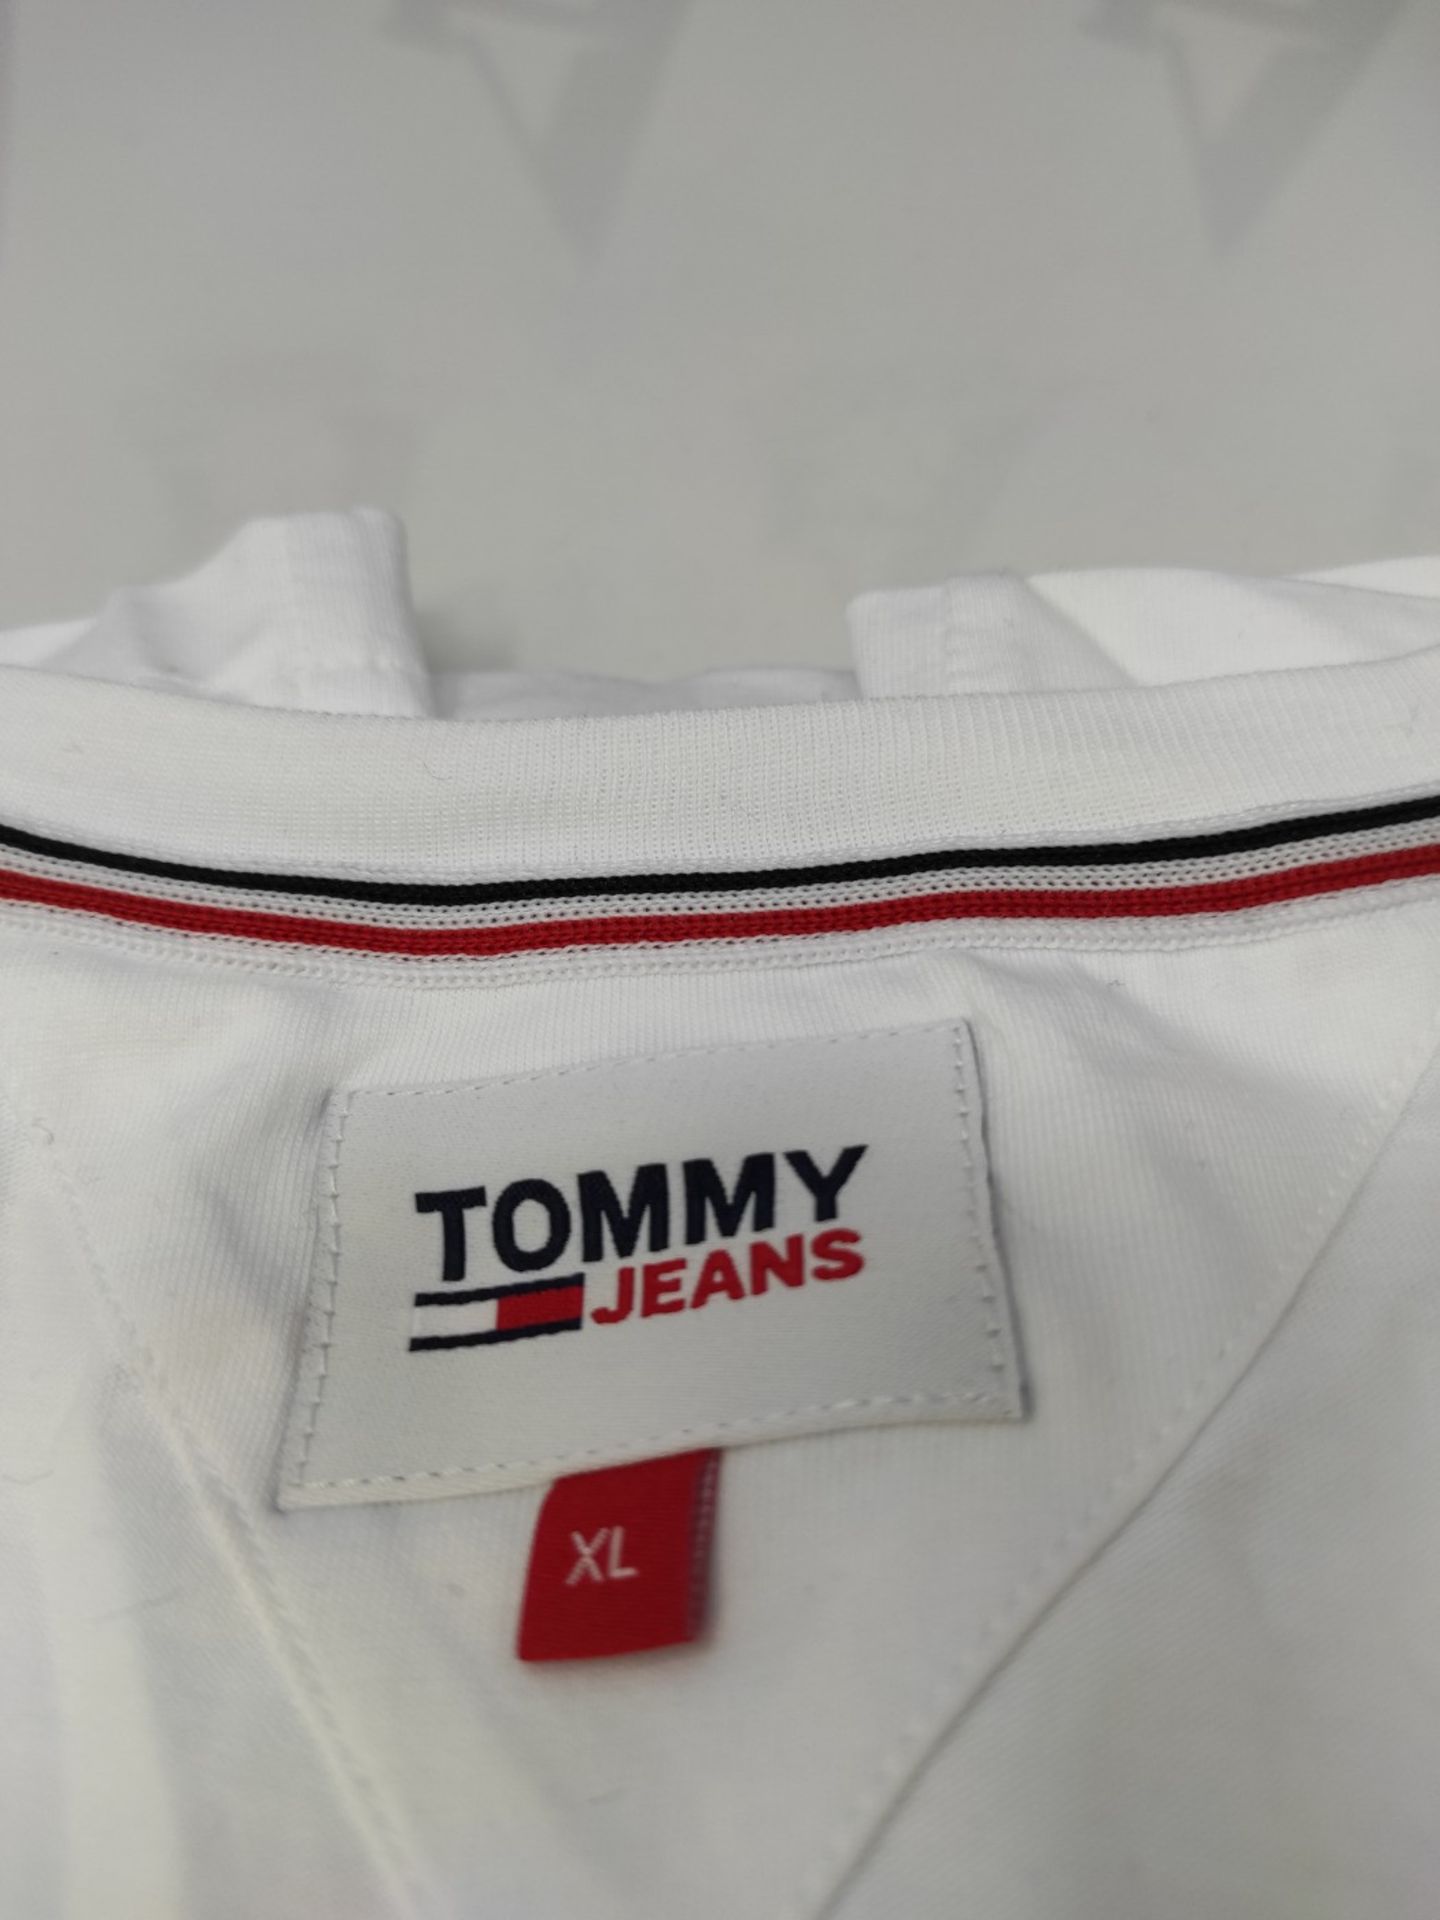 Tommy Hilfiger Tommy Jeans Men's Short Sleeve T-Shirt TJM Original V-Neck, White (Clas - Image 3 of 3